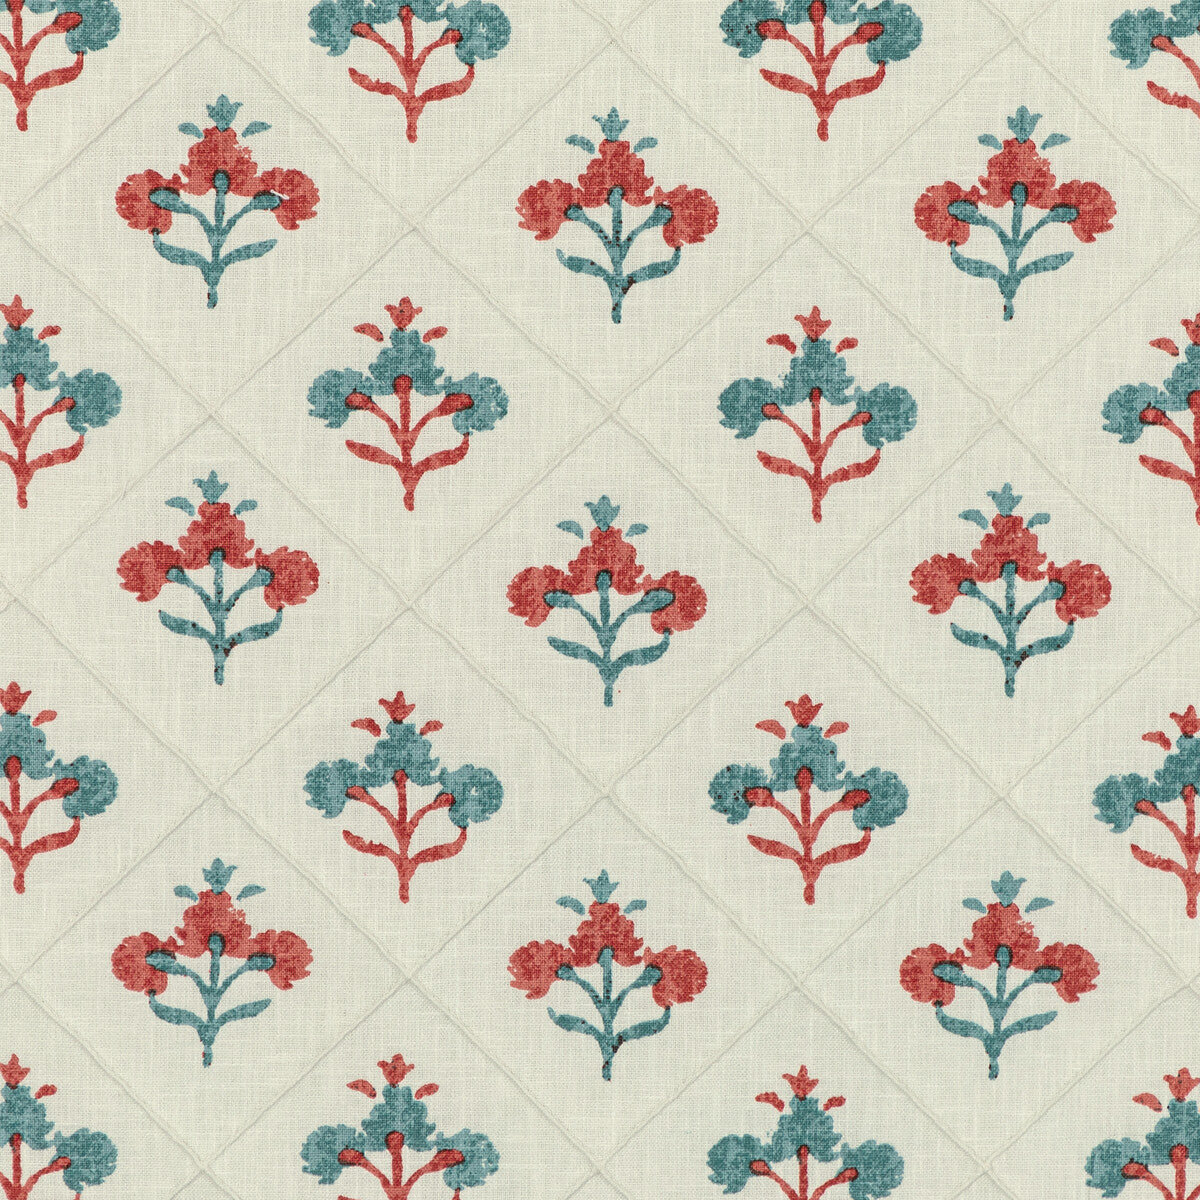 Kravet Basics fabric in rajaflower-19 color - pattern RAJAFLOWER.19.0 - by Kravet Basics in the L&